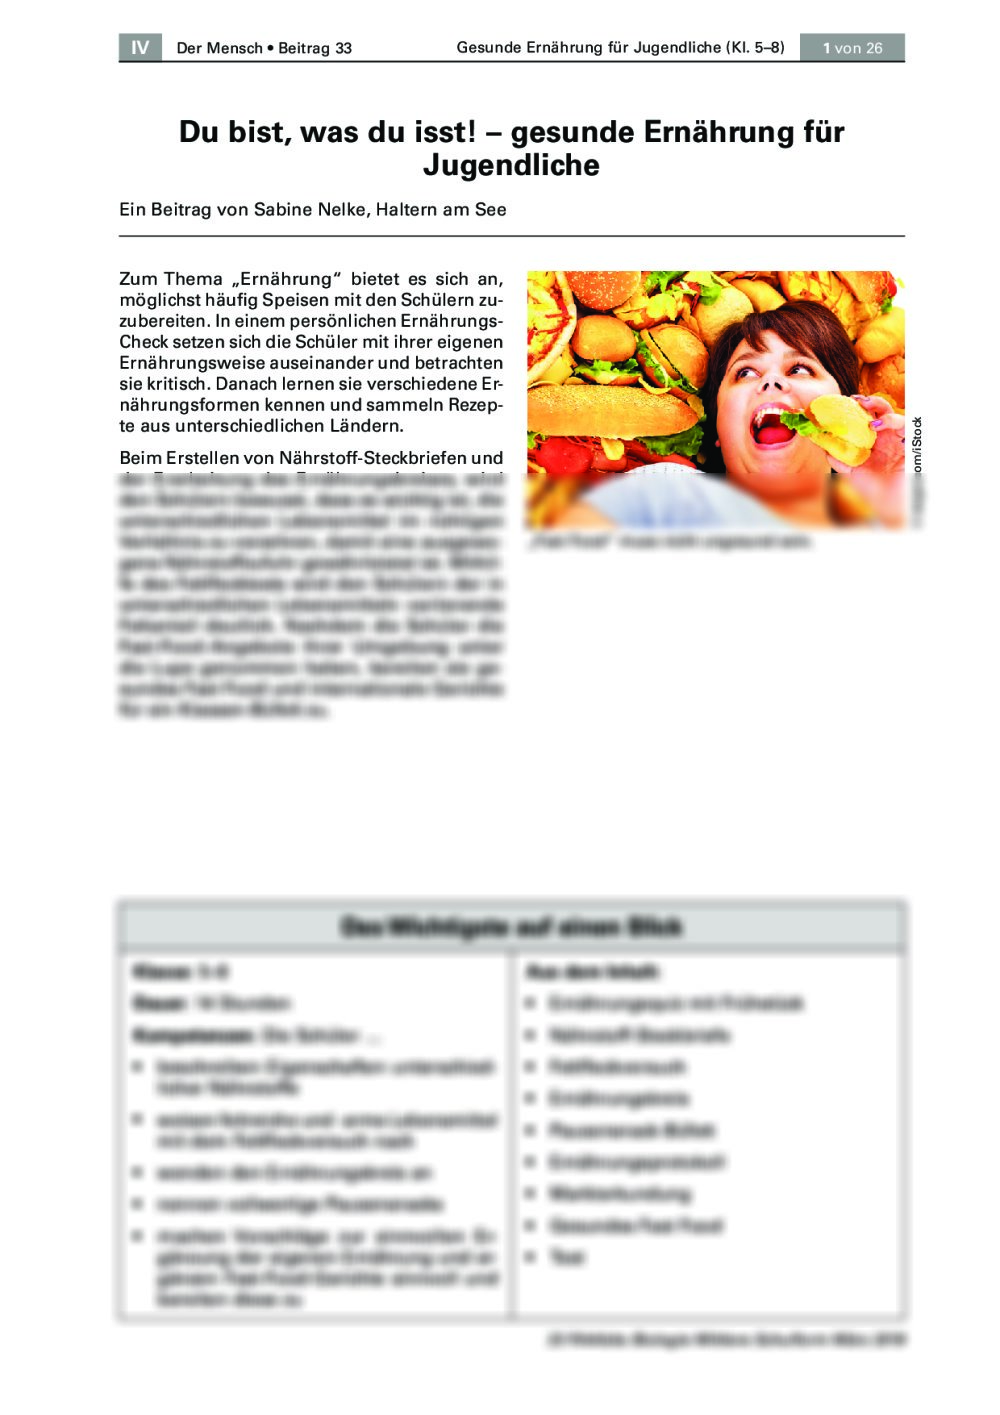 Gesunde Ernährung für Jugendliche - Seite 1